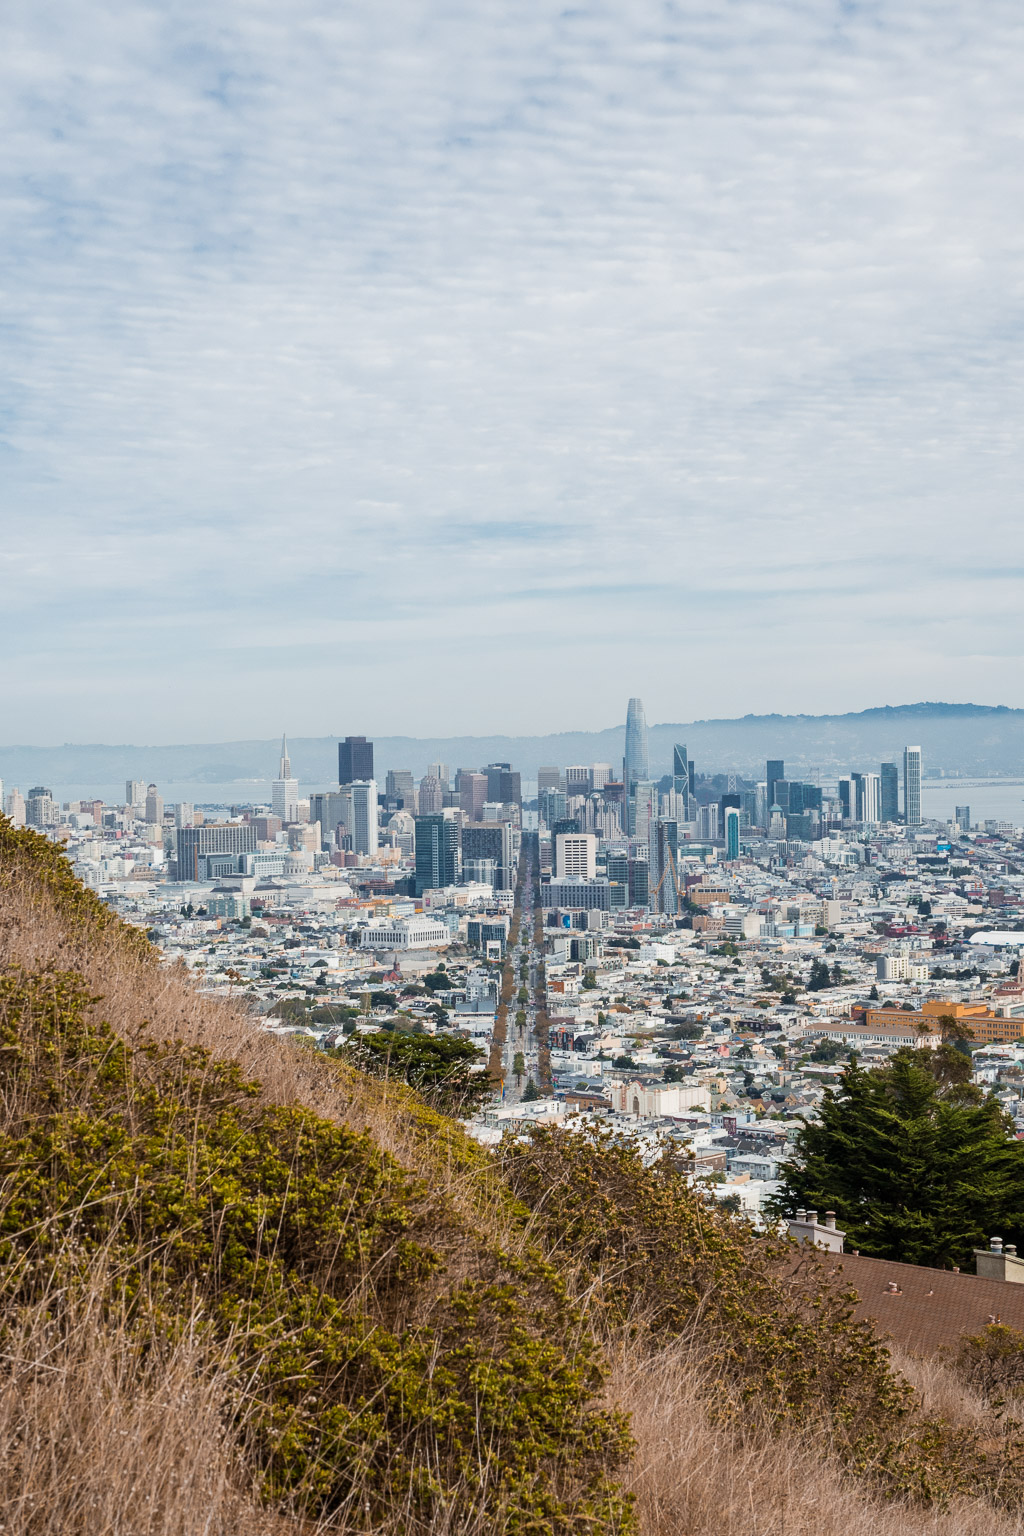 Aussicht vom Christmas Tree Point auf den Twin Peaks Urban Hike – wandern in San Francisco San Francisco in 3 Tagen aktiv entdecken – Reisetipps, Highlights und besondere Aktivitäten